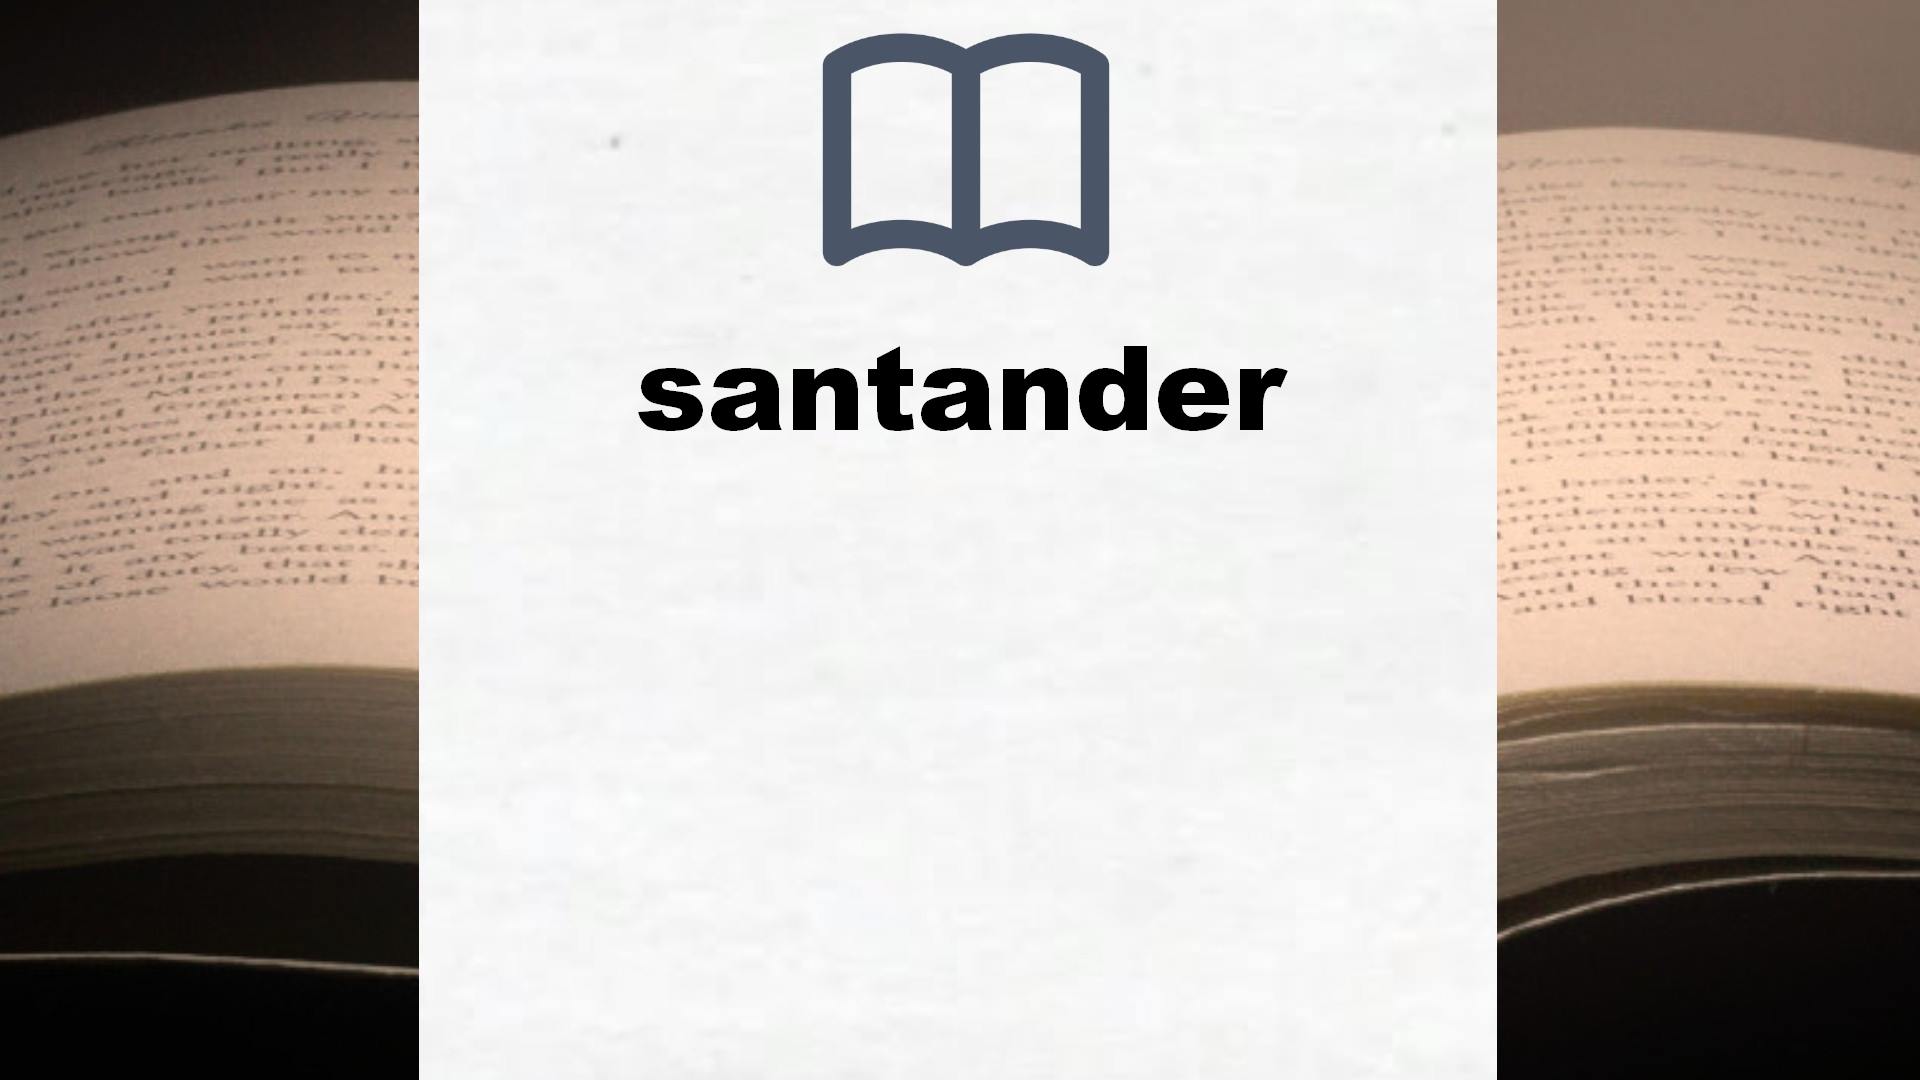 Libros sobre santander